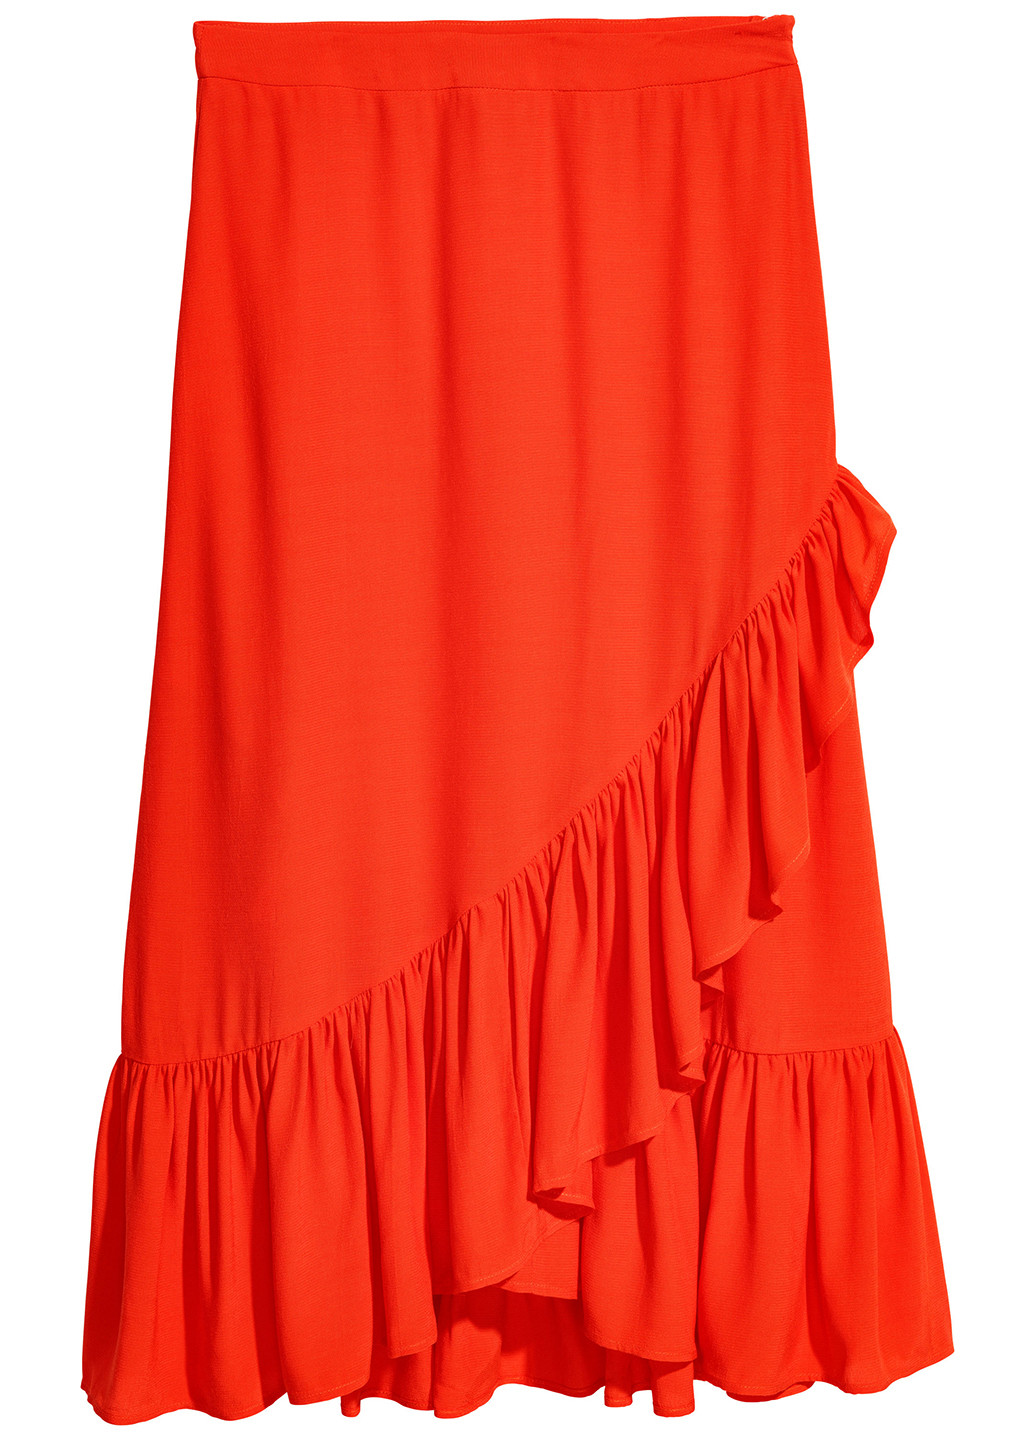 Красная кэжуал юбка H&M а-силуэта (трапеция)